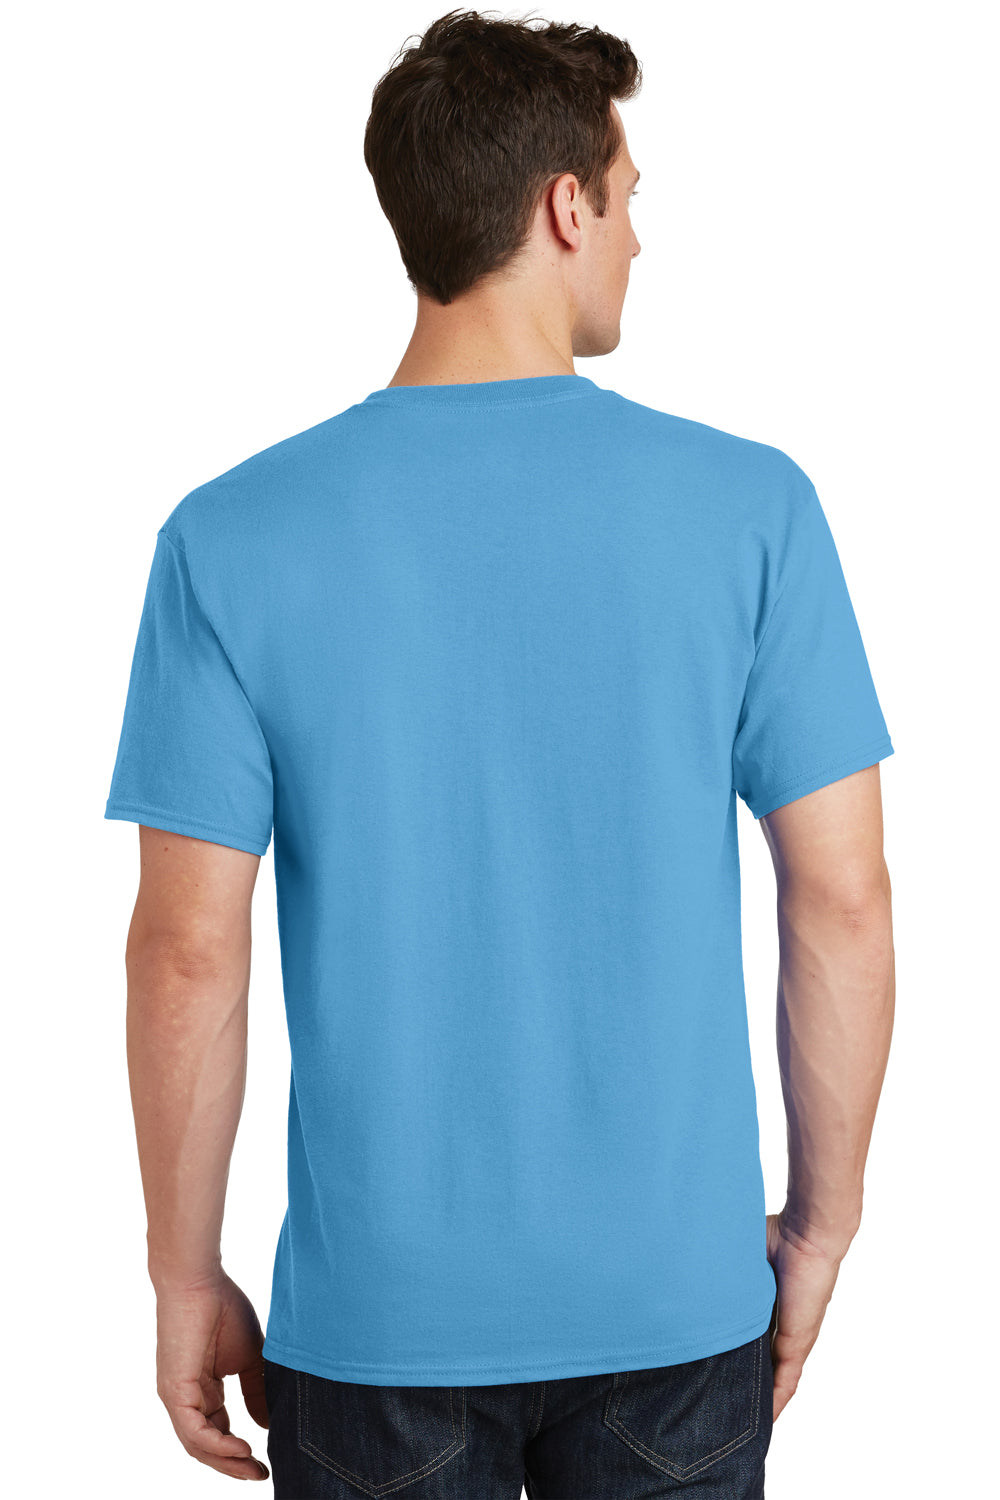 Port & Company PC54 Mens Core Short Sleeve Crewneck T-Shirt Aqua Blue Back